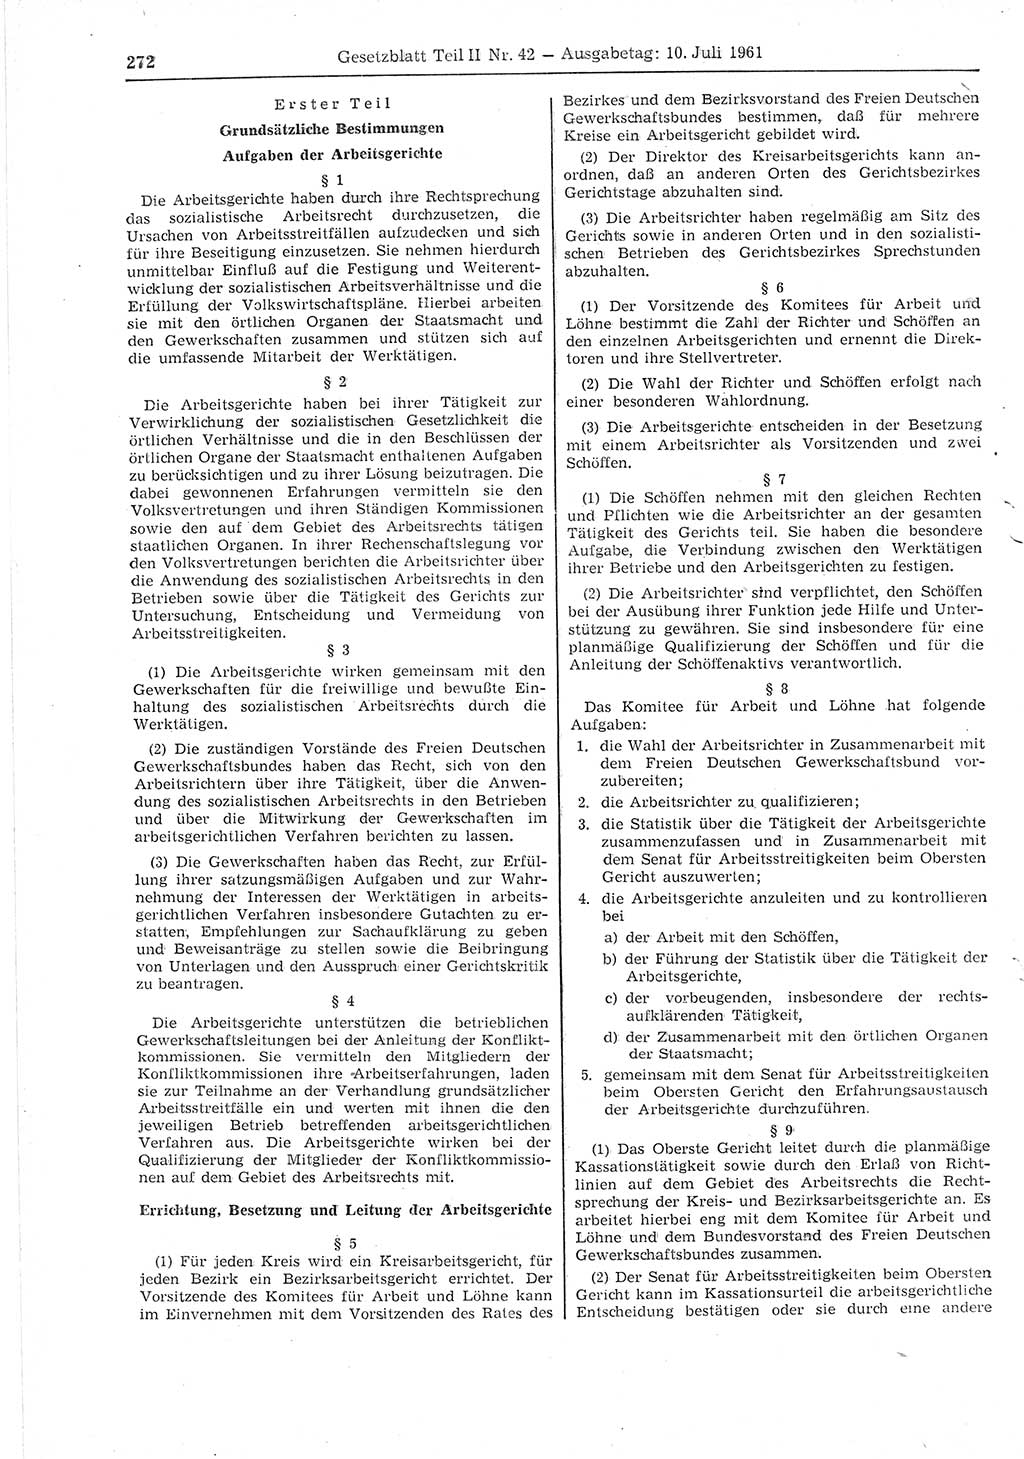 Gesetzblatt (GBl.) der Deutschen Demokratischen Republik (DDR) Teil ⅠⅠ 1961, Seite 272 (GBl. DDR ⅠⅠ 1961, S. 272)